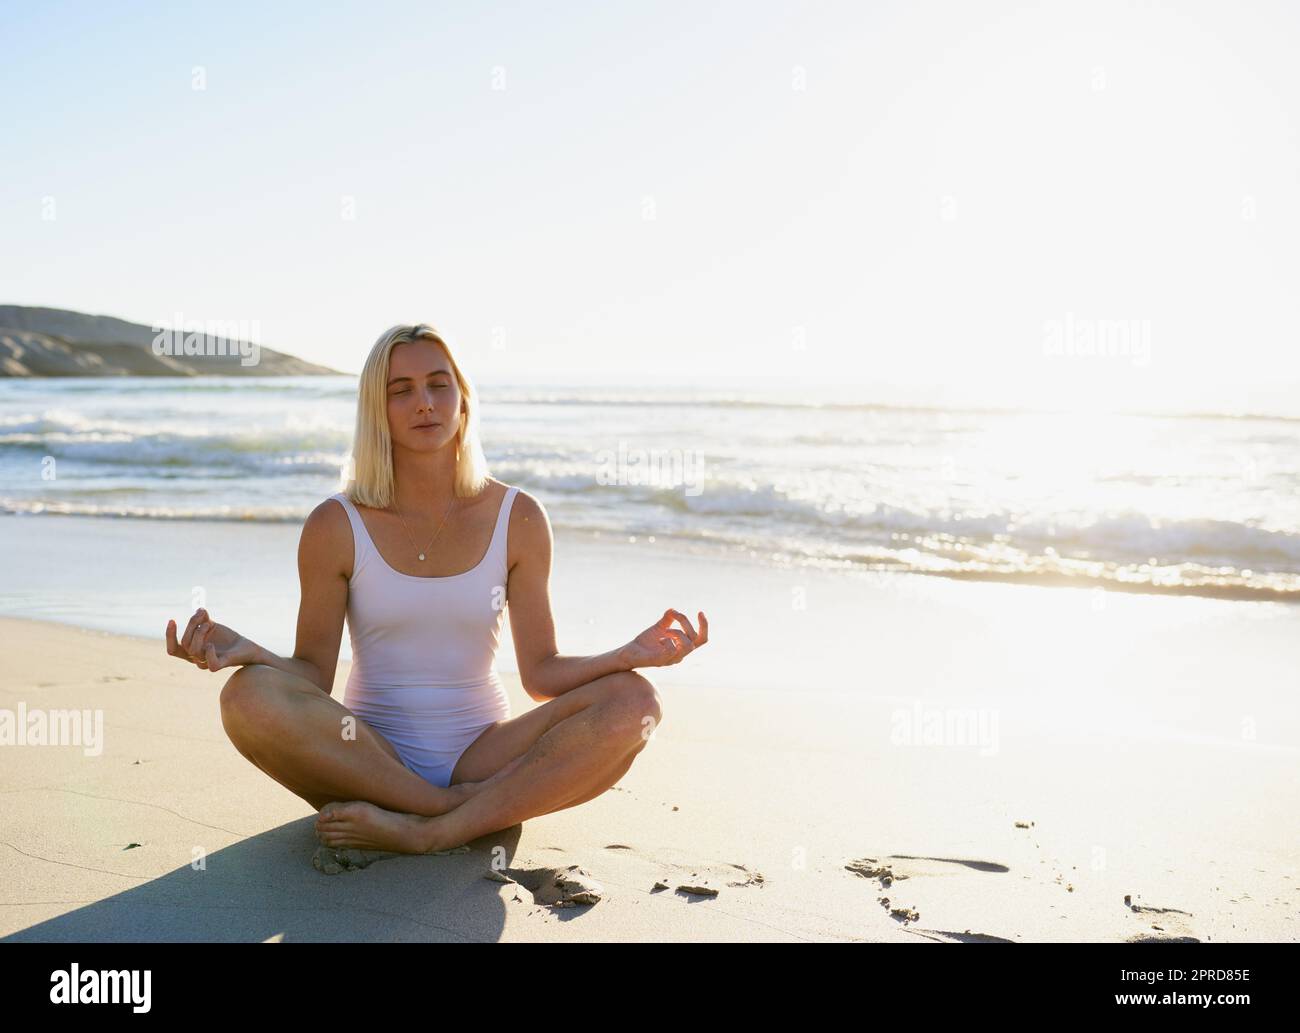 Am besten am Morgen ist es, mich auf den Atem zu konzentrieren. Ganzkörperaufnahme einer attraktiven jungen Frau, die mit gekreuzten Beinen am Strand sitzt und meditiert. Stockfoto